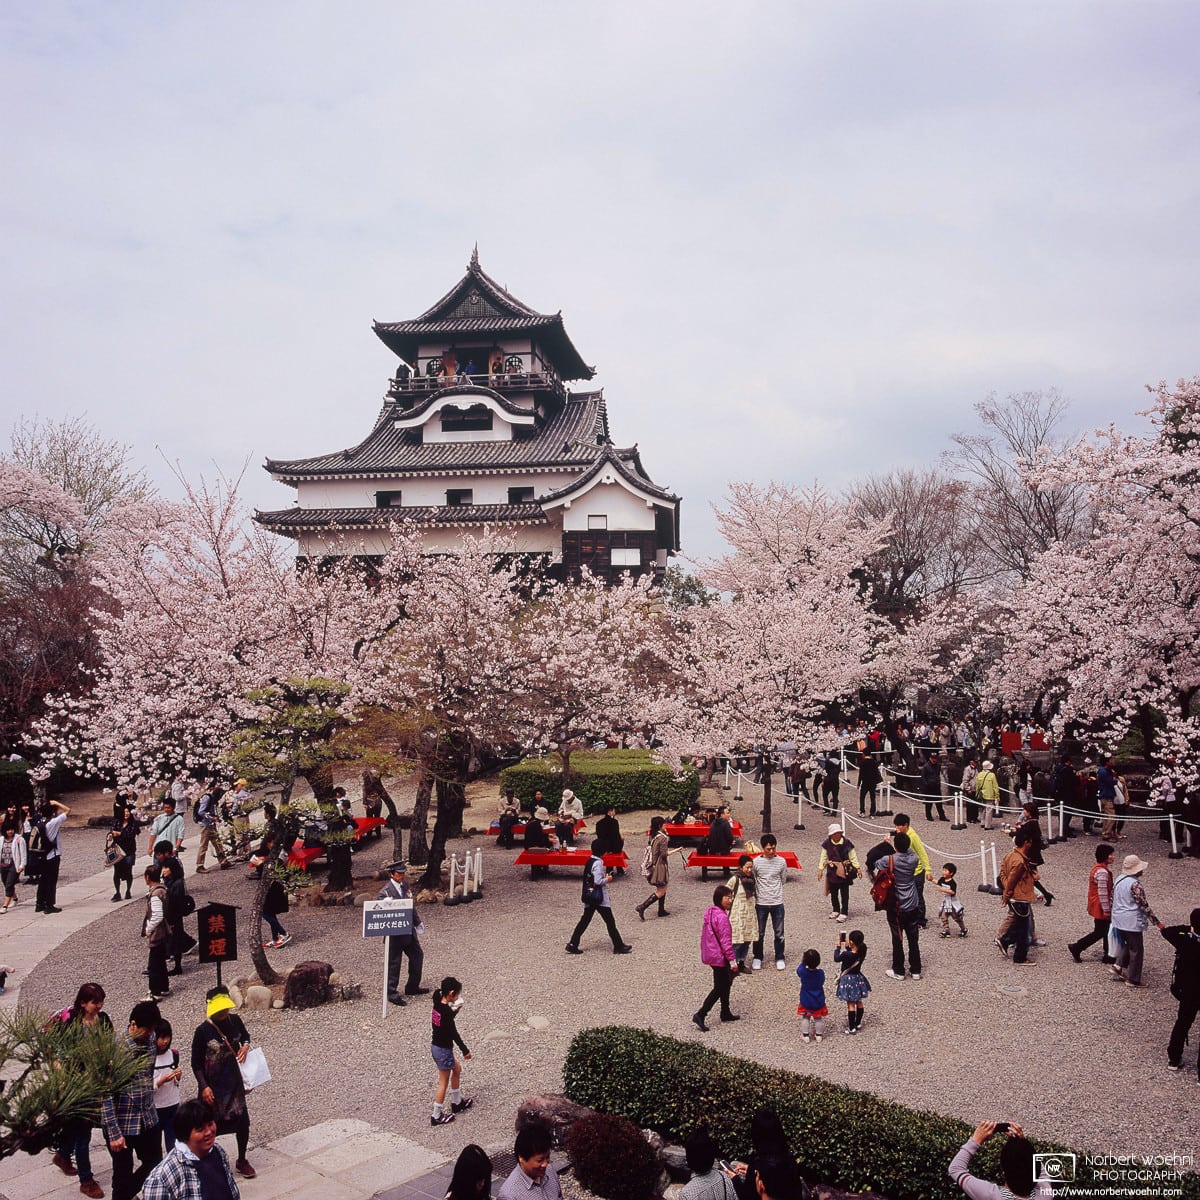 Visitors enjoying Hanami (Cherry Blossom Viewing) at Inuyama Castle (犬山城) in Inuyama, 30 minutes north of Nagoya, Japan.